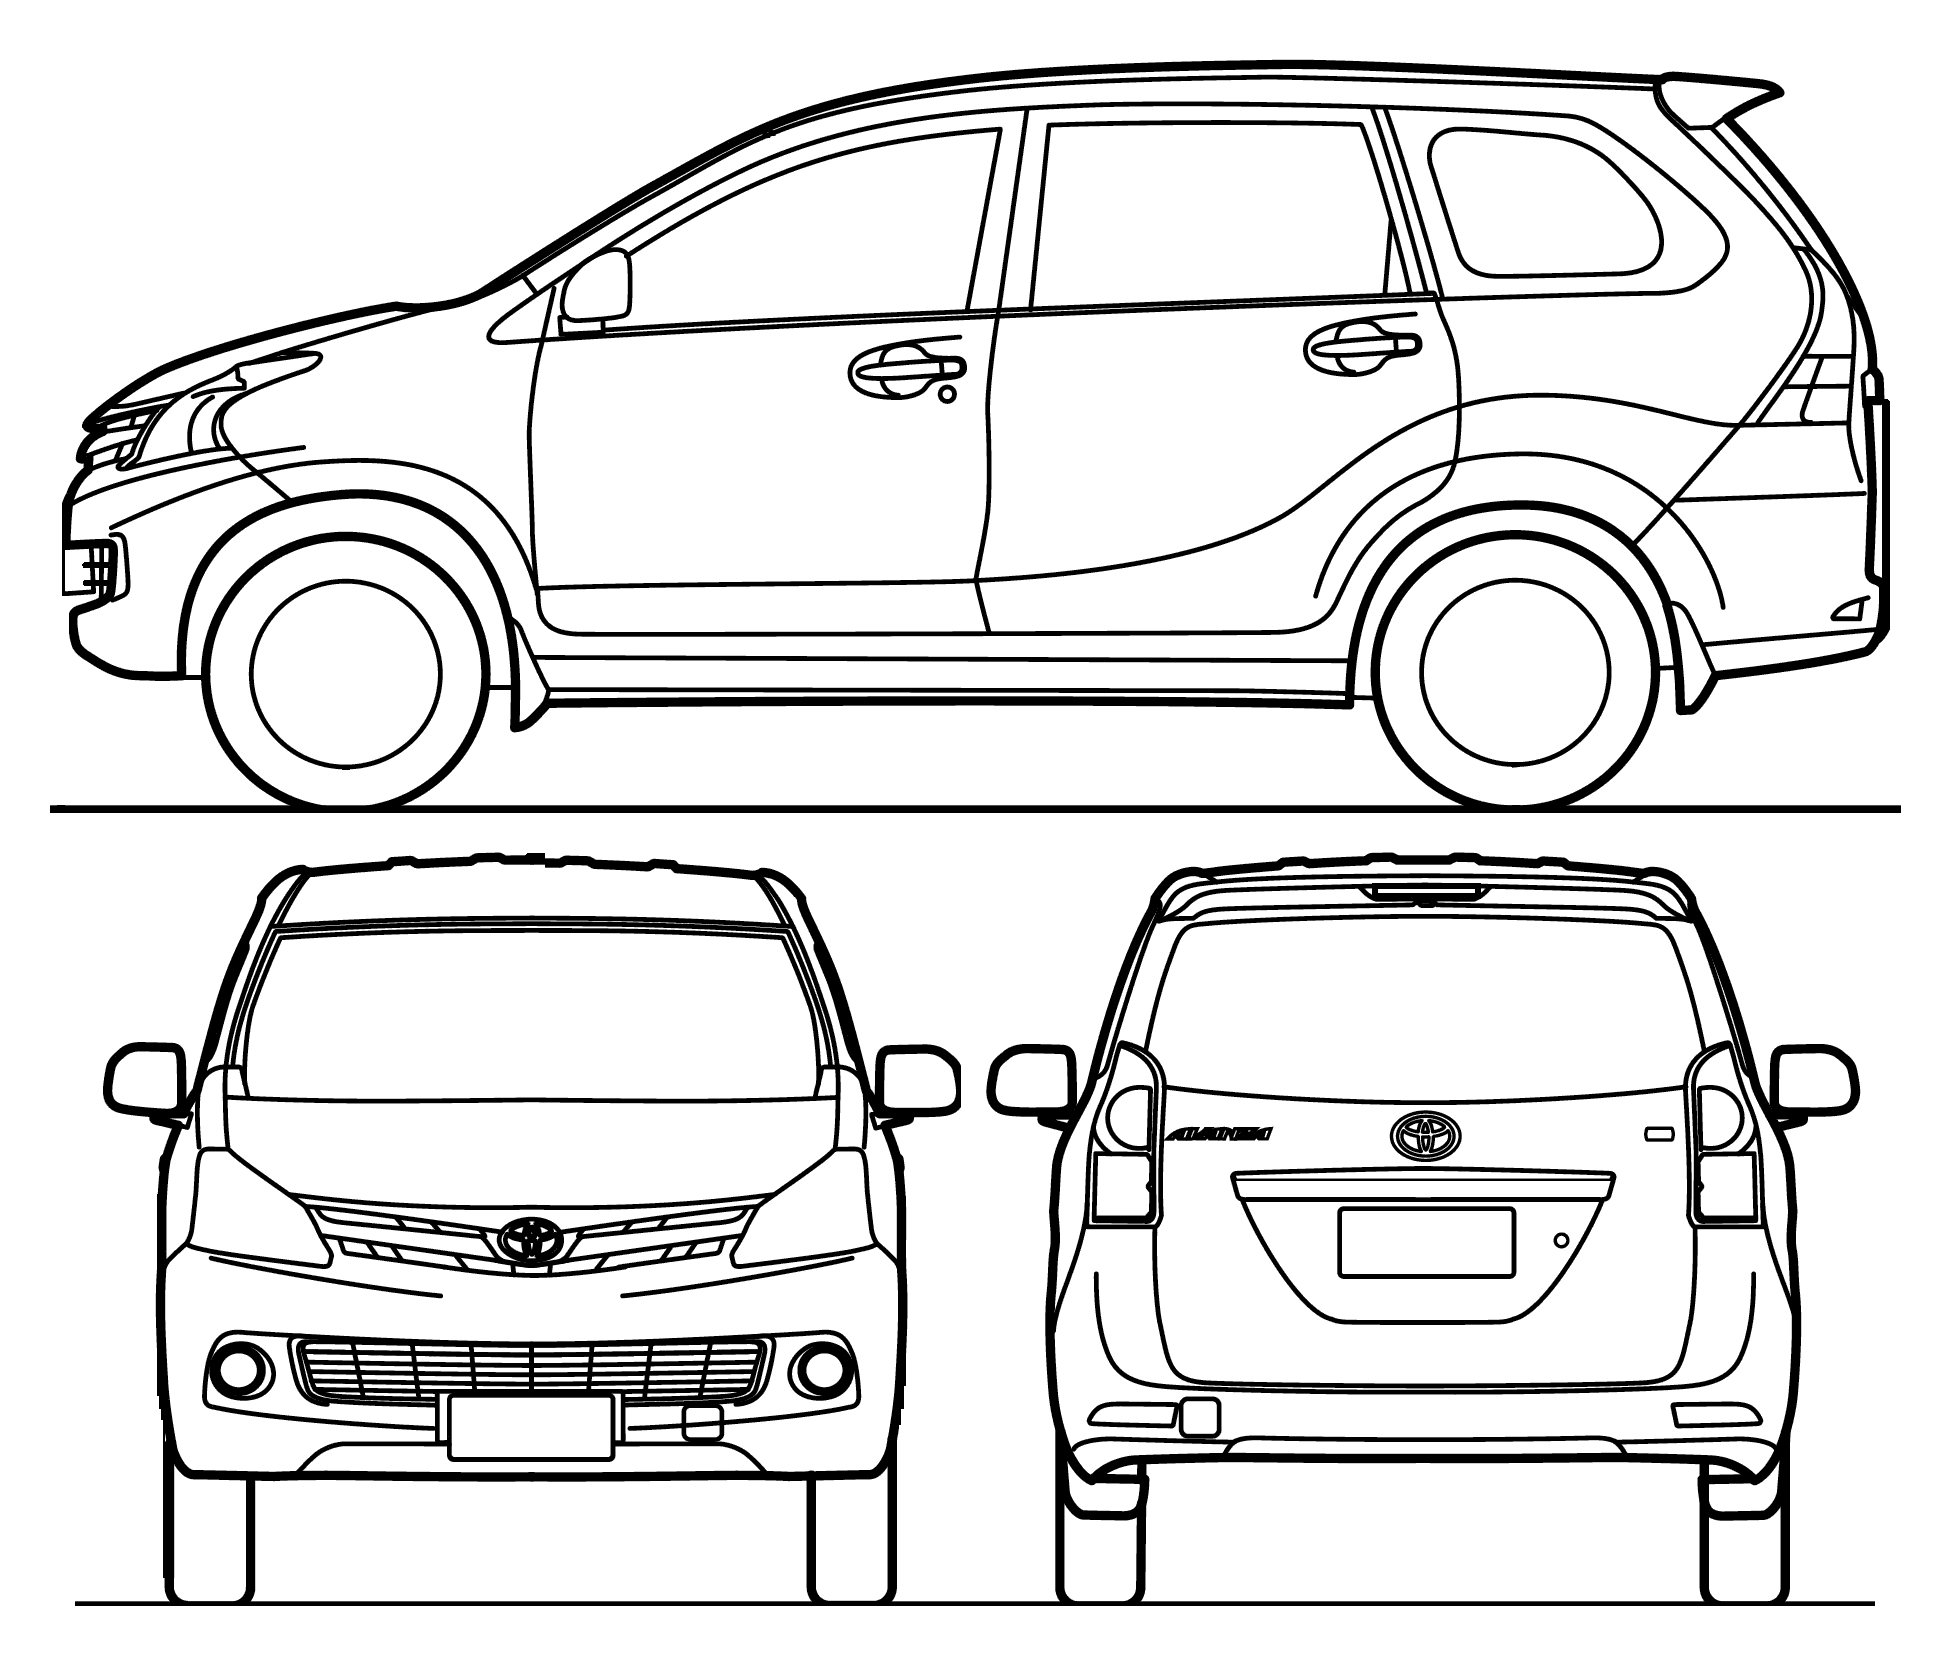 Toyota Avanza blueprint